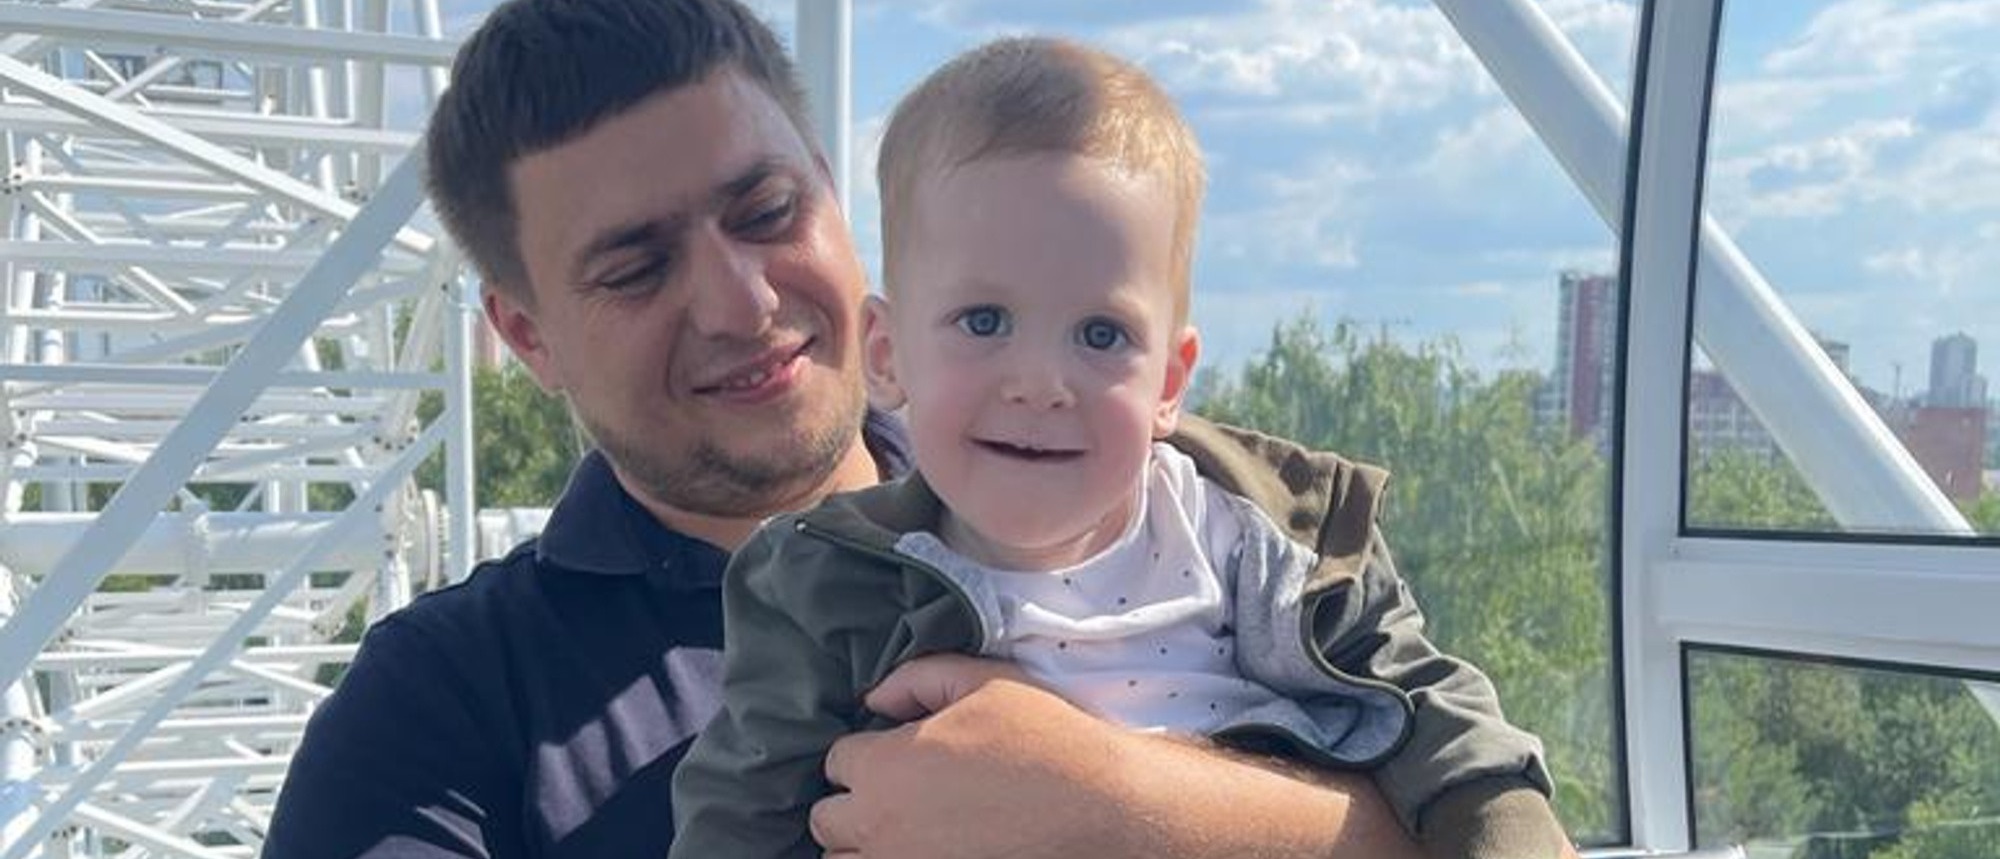 Суд обязал Минздрав Свердловской области обеспечить нужным лекарством трехлетнего Мишу Бахтина со СМА